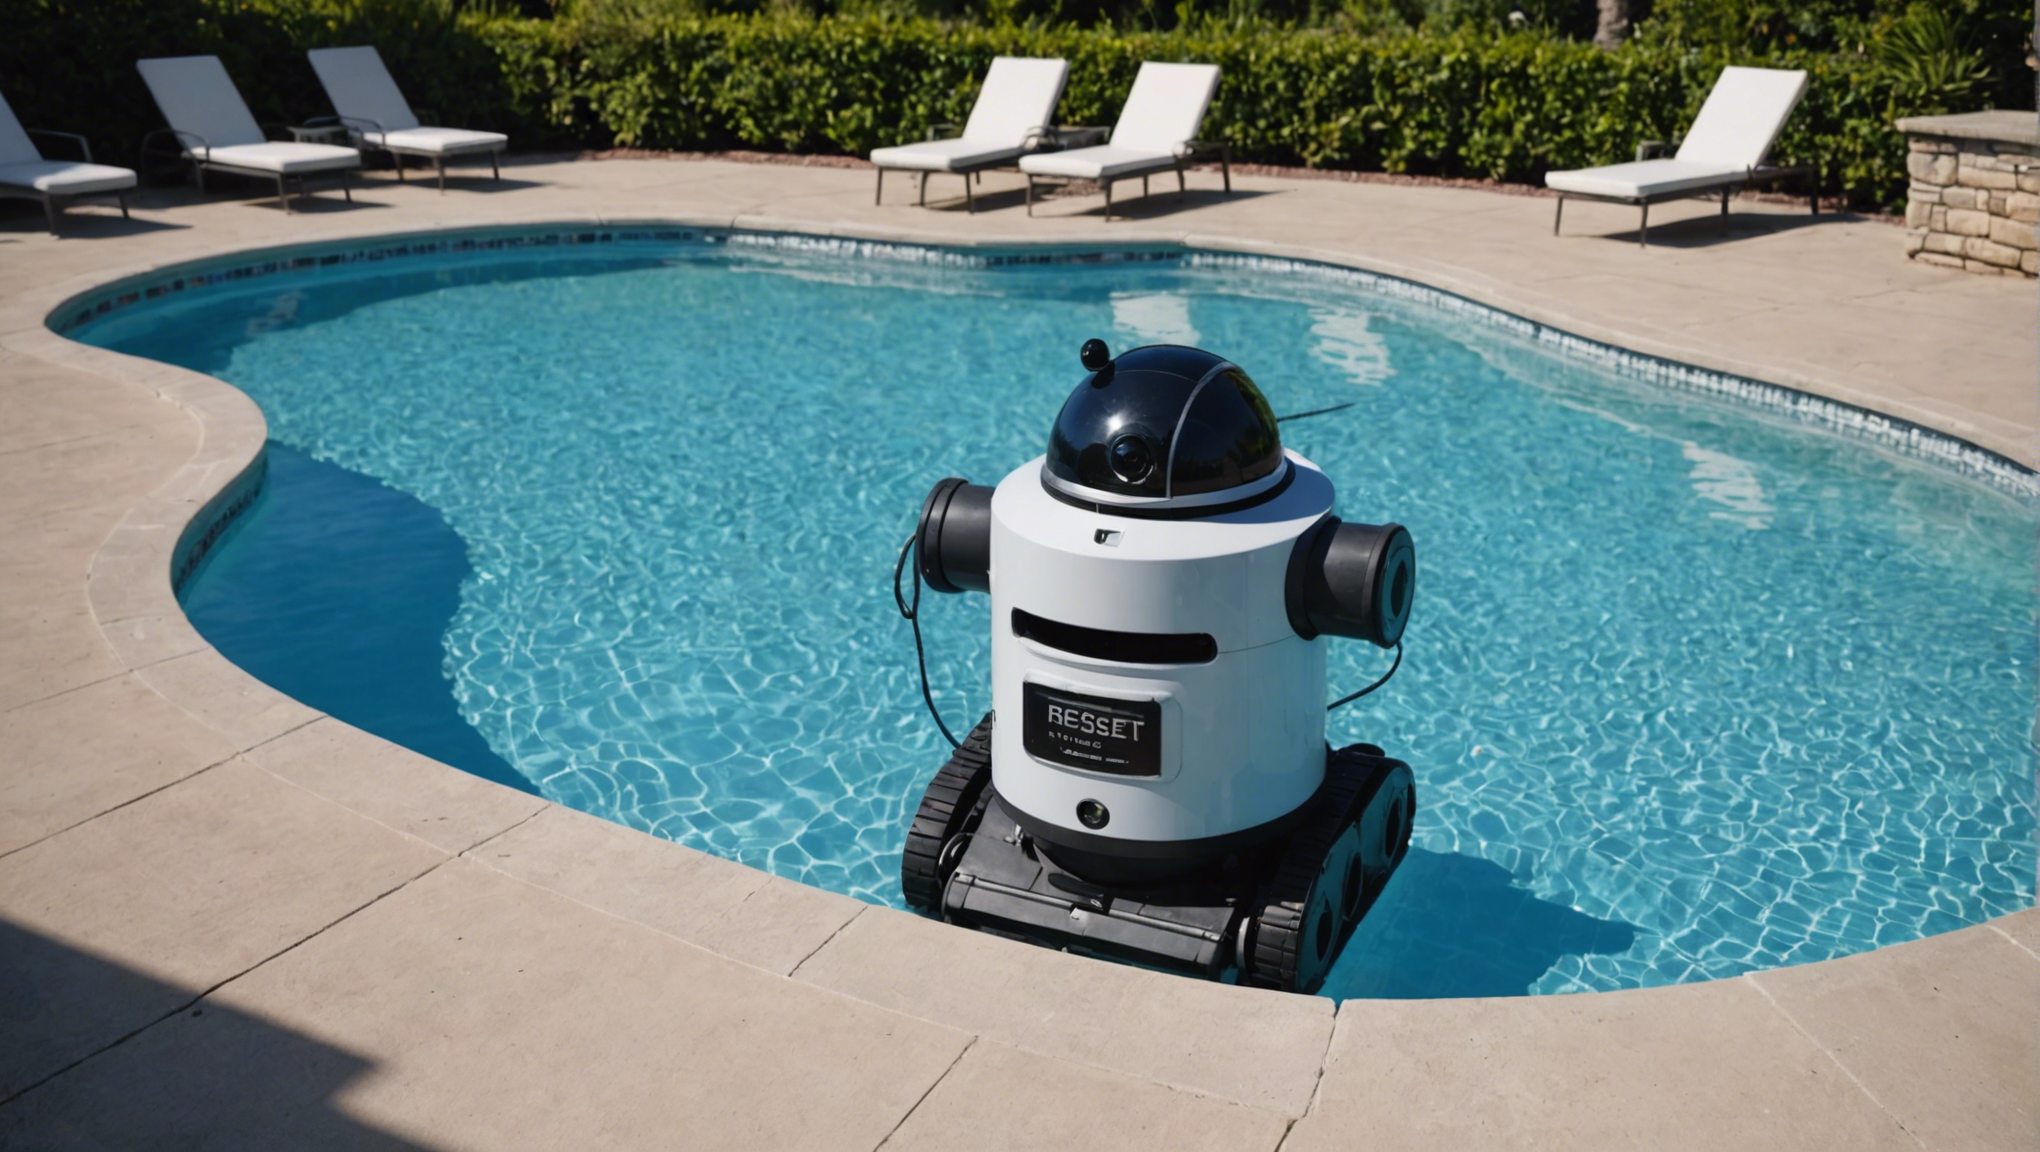 découvrez l'importance de la réinitialisation périodique d'un robot de piscine pour son bon fonctionnement et une efficacité optimale dans le nettoyage de votre piscine.